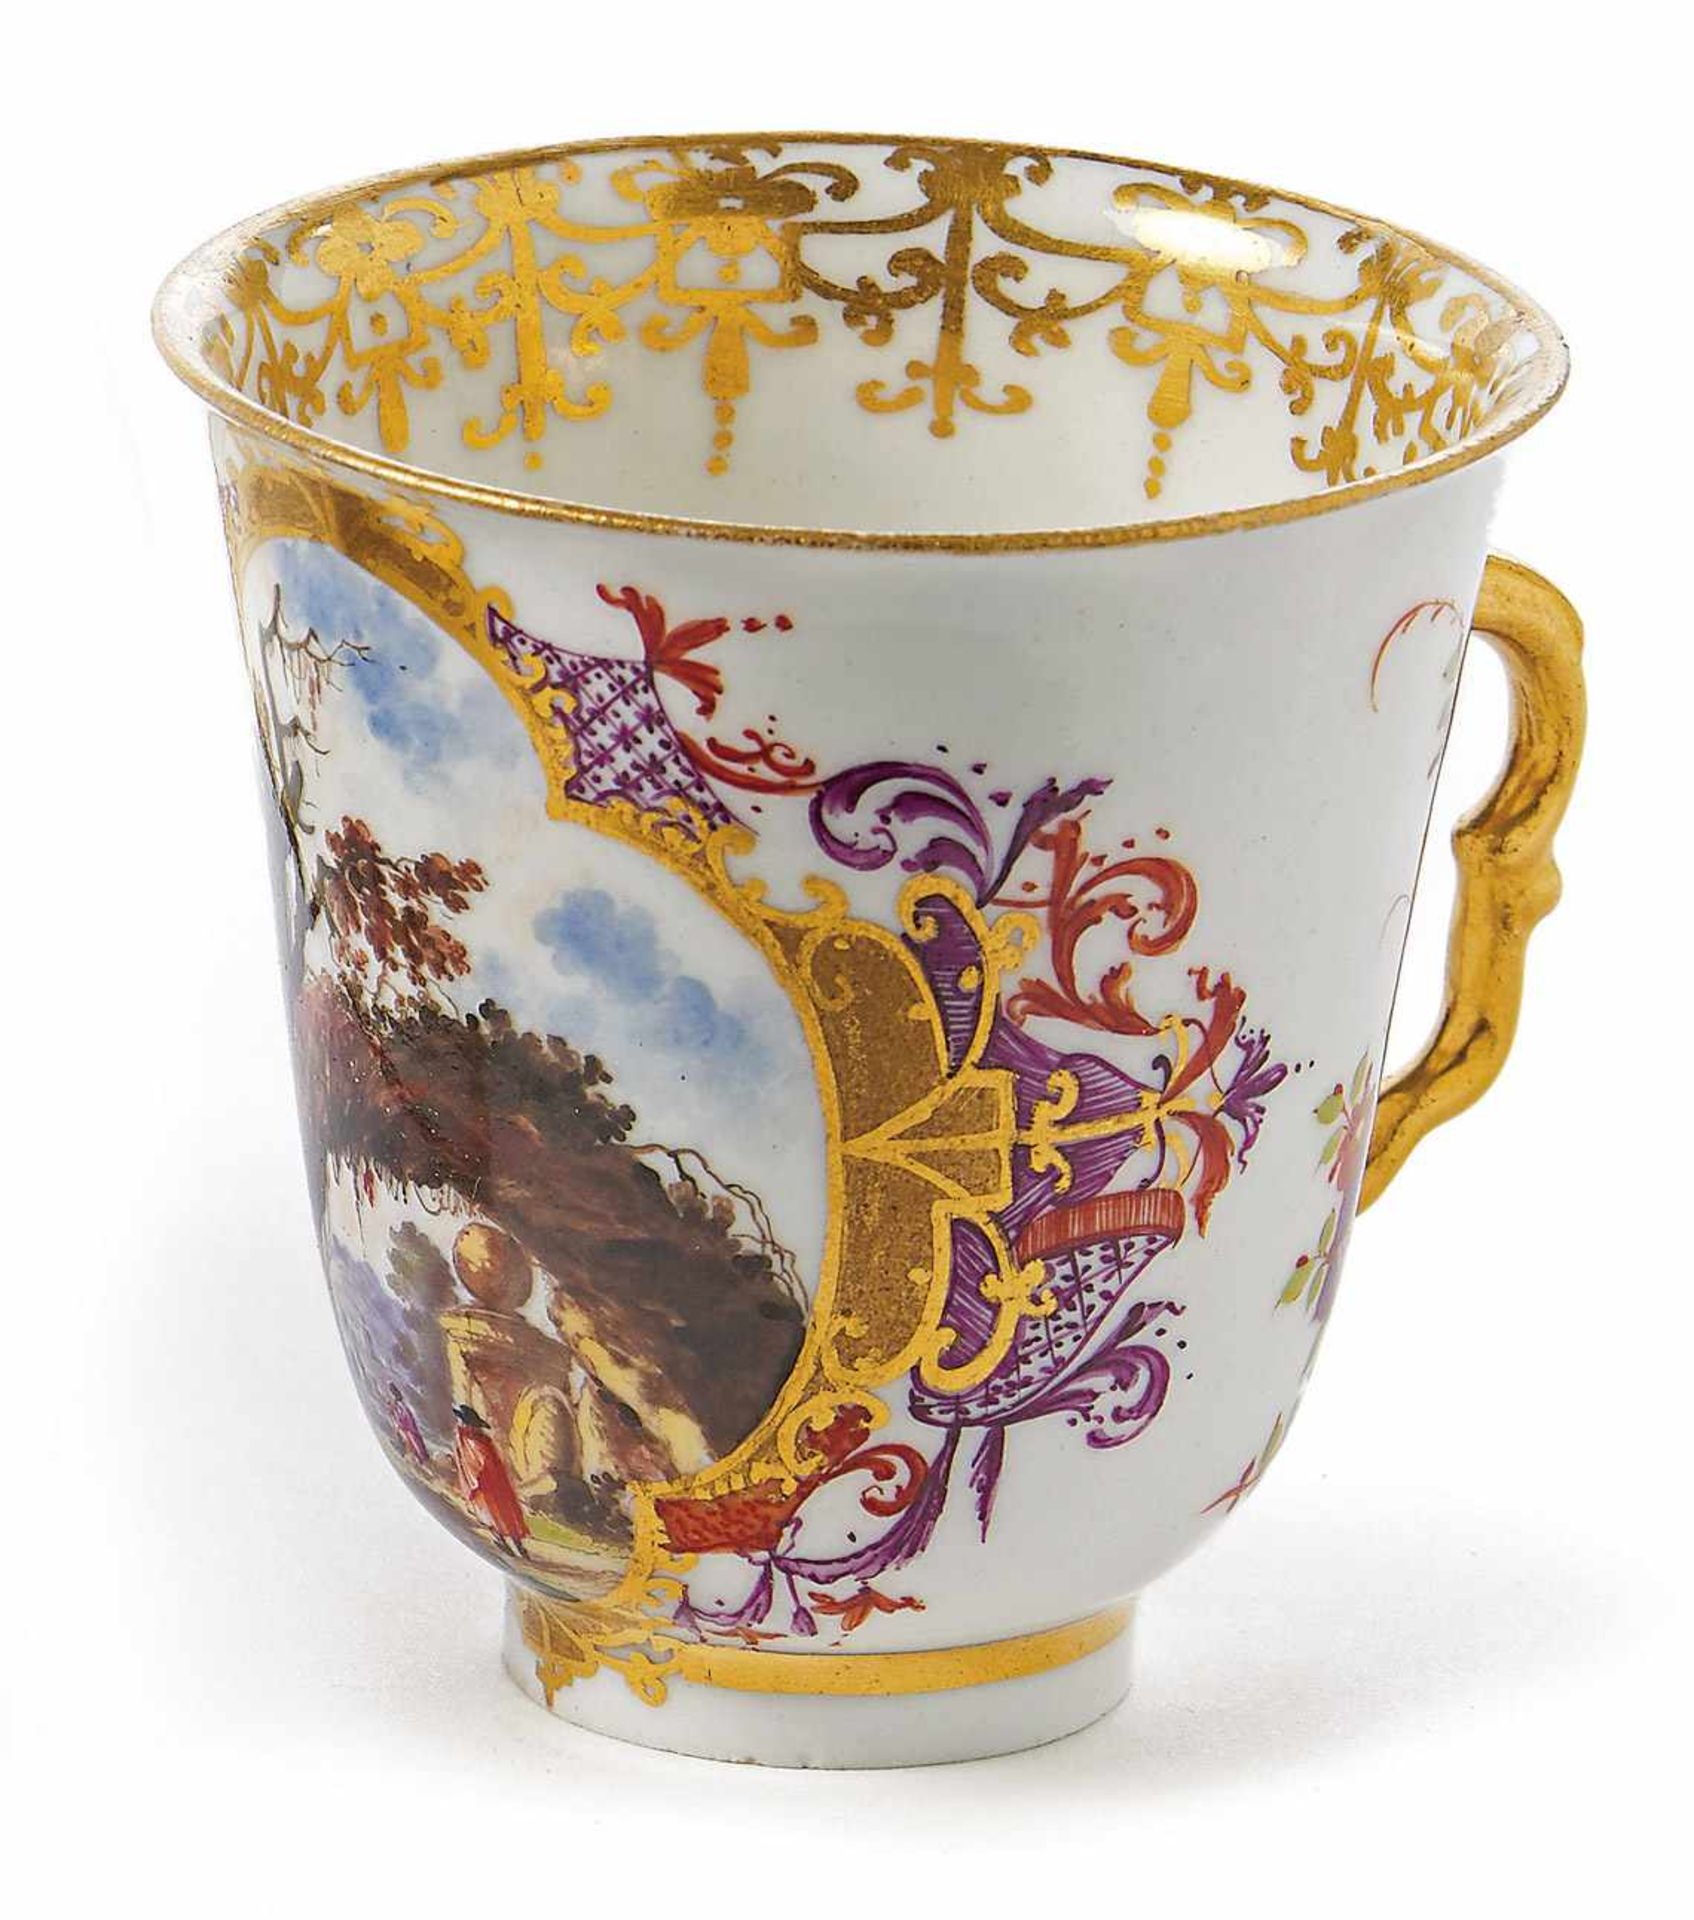 Bechertasse Meissen, um 1725/30 Schauseitig in reich ornamentierter Goldkartusche farbig gemalte